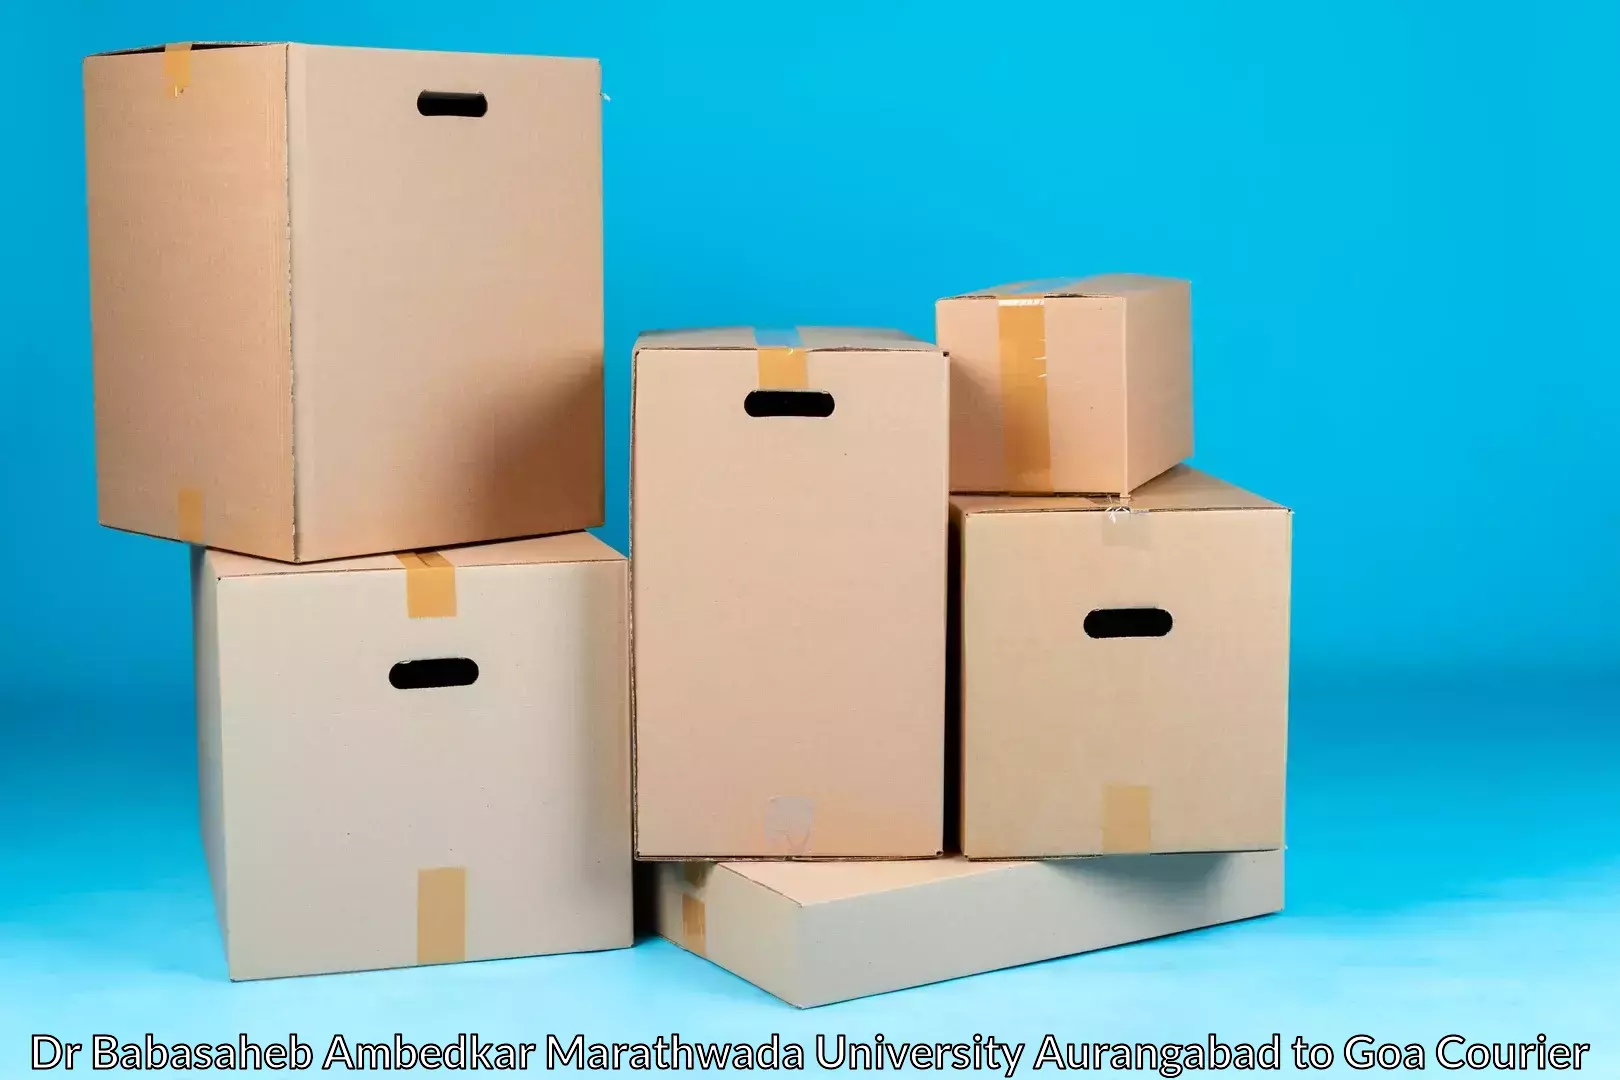 Home moving specialists Dr Babasaheb Ambedkar Marathwada University Aurangabad to Ponda